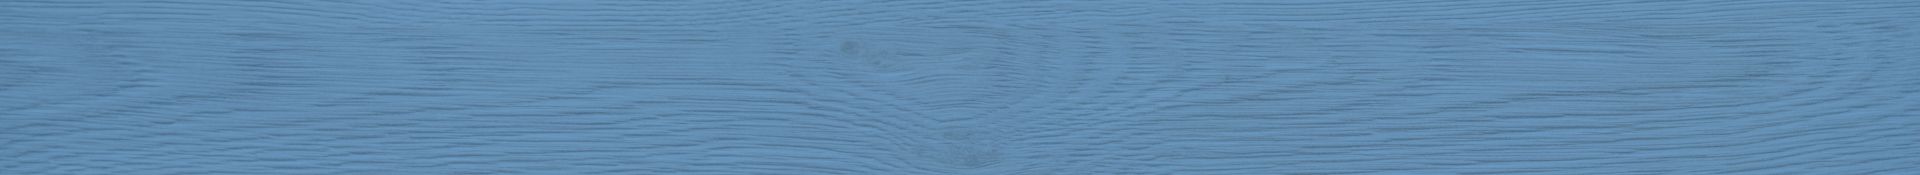 Drewniana deska pomalowana na niebieski kolor